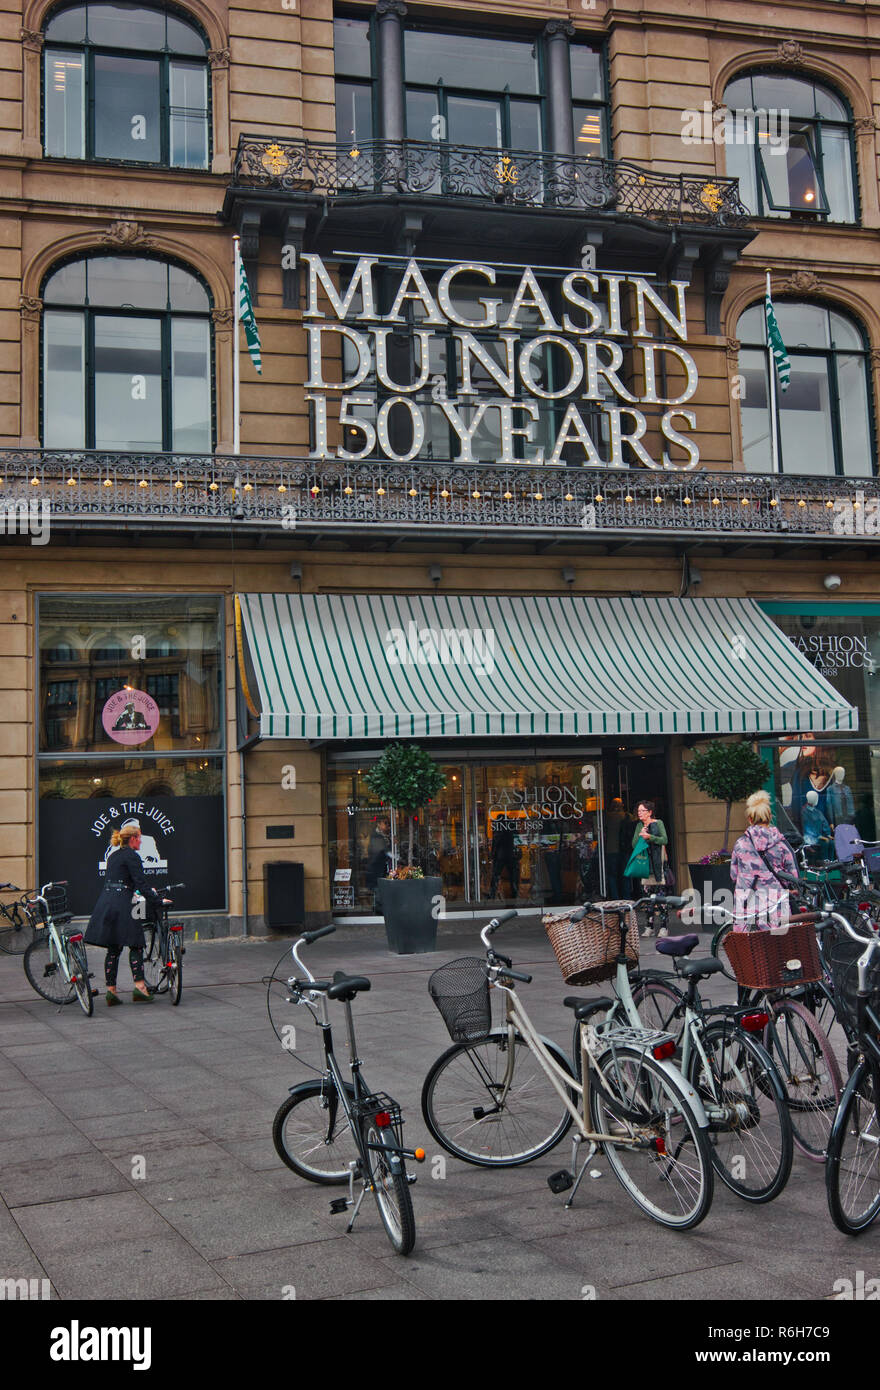 Magasin du Nord department store, Kongens Nytorv, Copenhagen, Denmark, Scandinavia Stock Photo